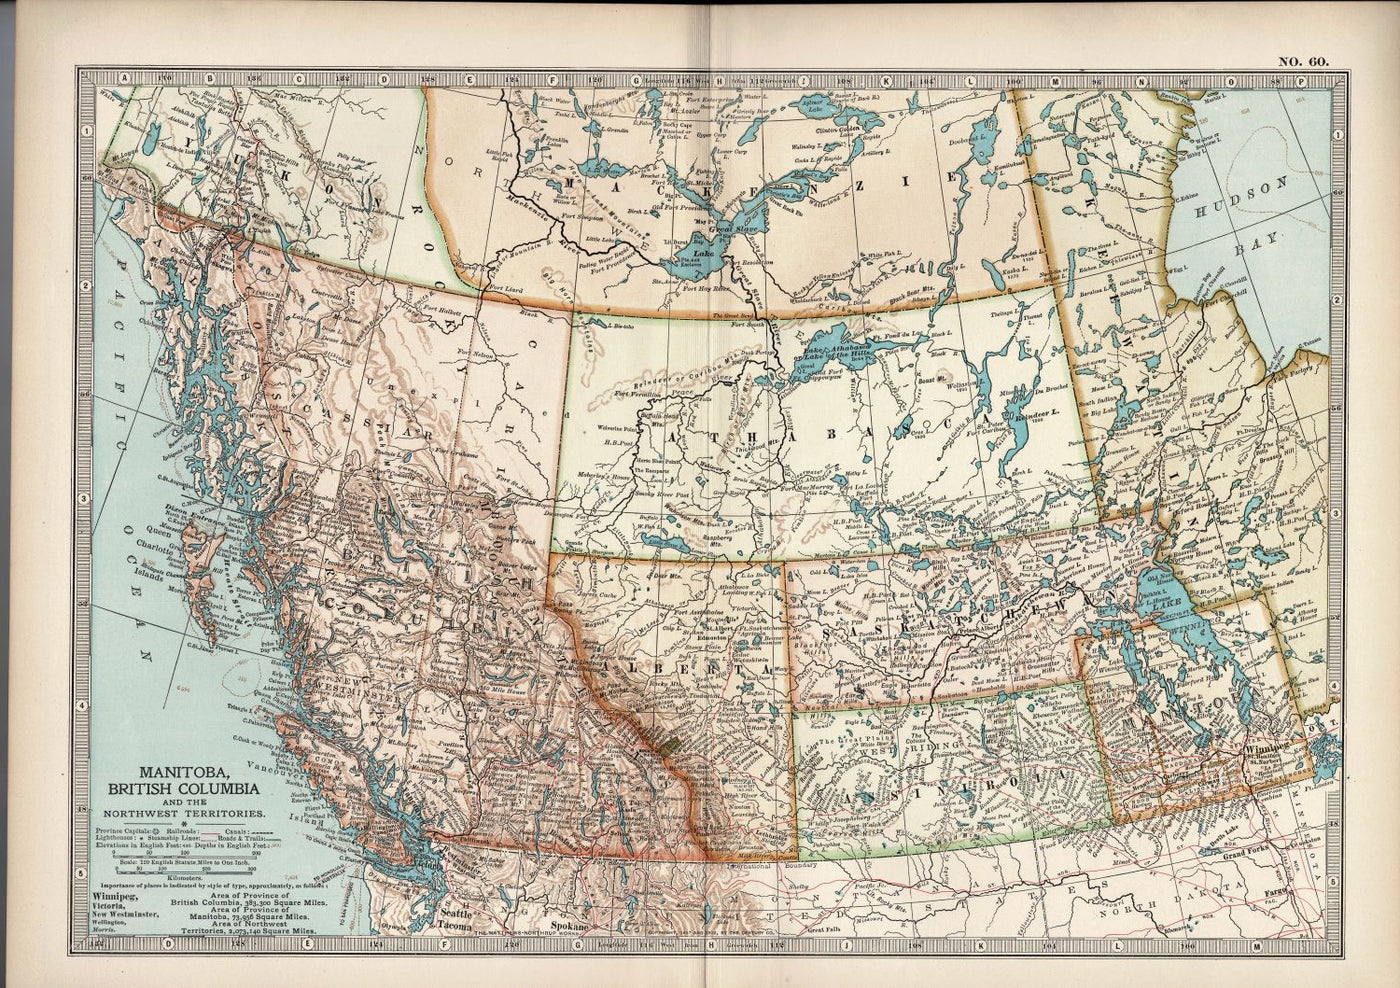 Manitoba British Columbia & North West Territories Encyclopaedia Britannica 1903